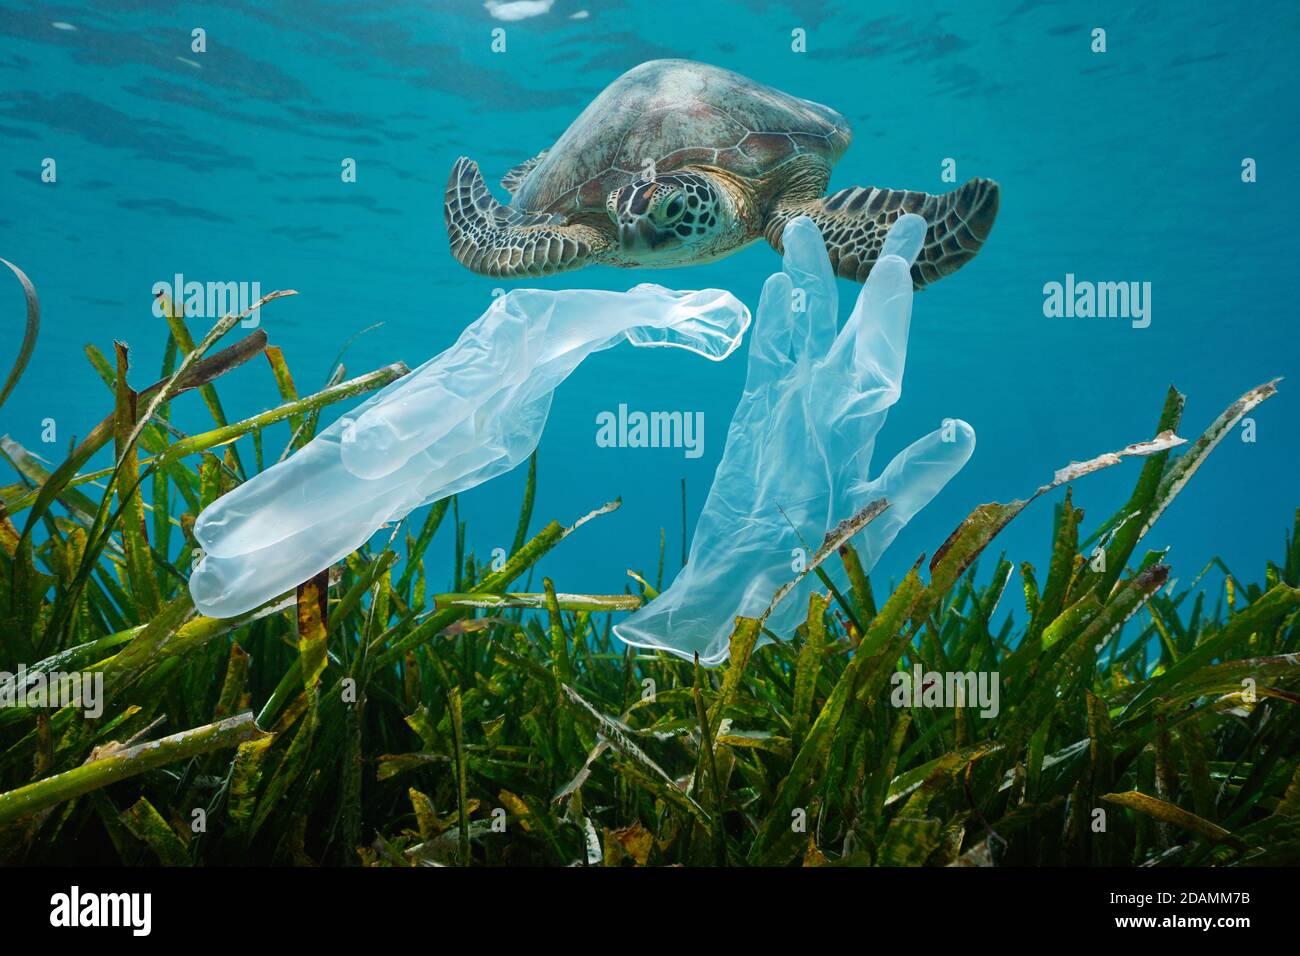 Contaminación de residuos plásticos en el océano, guantes desechables con algas marinas y una tortuga marina bajo el agua Foto de stock